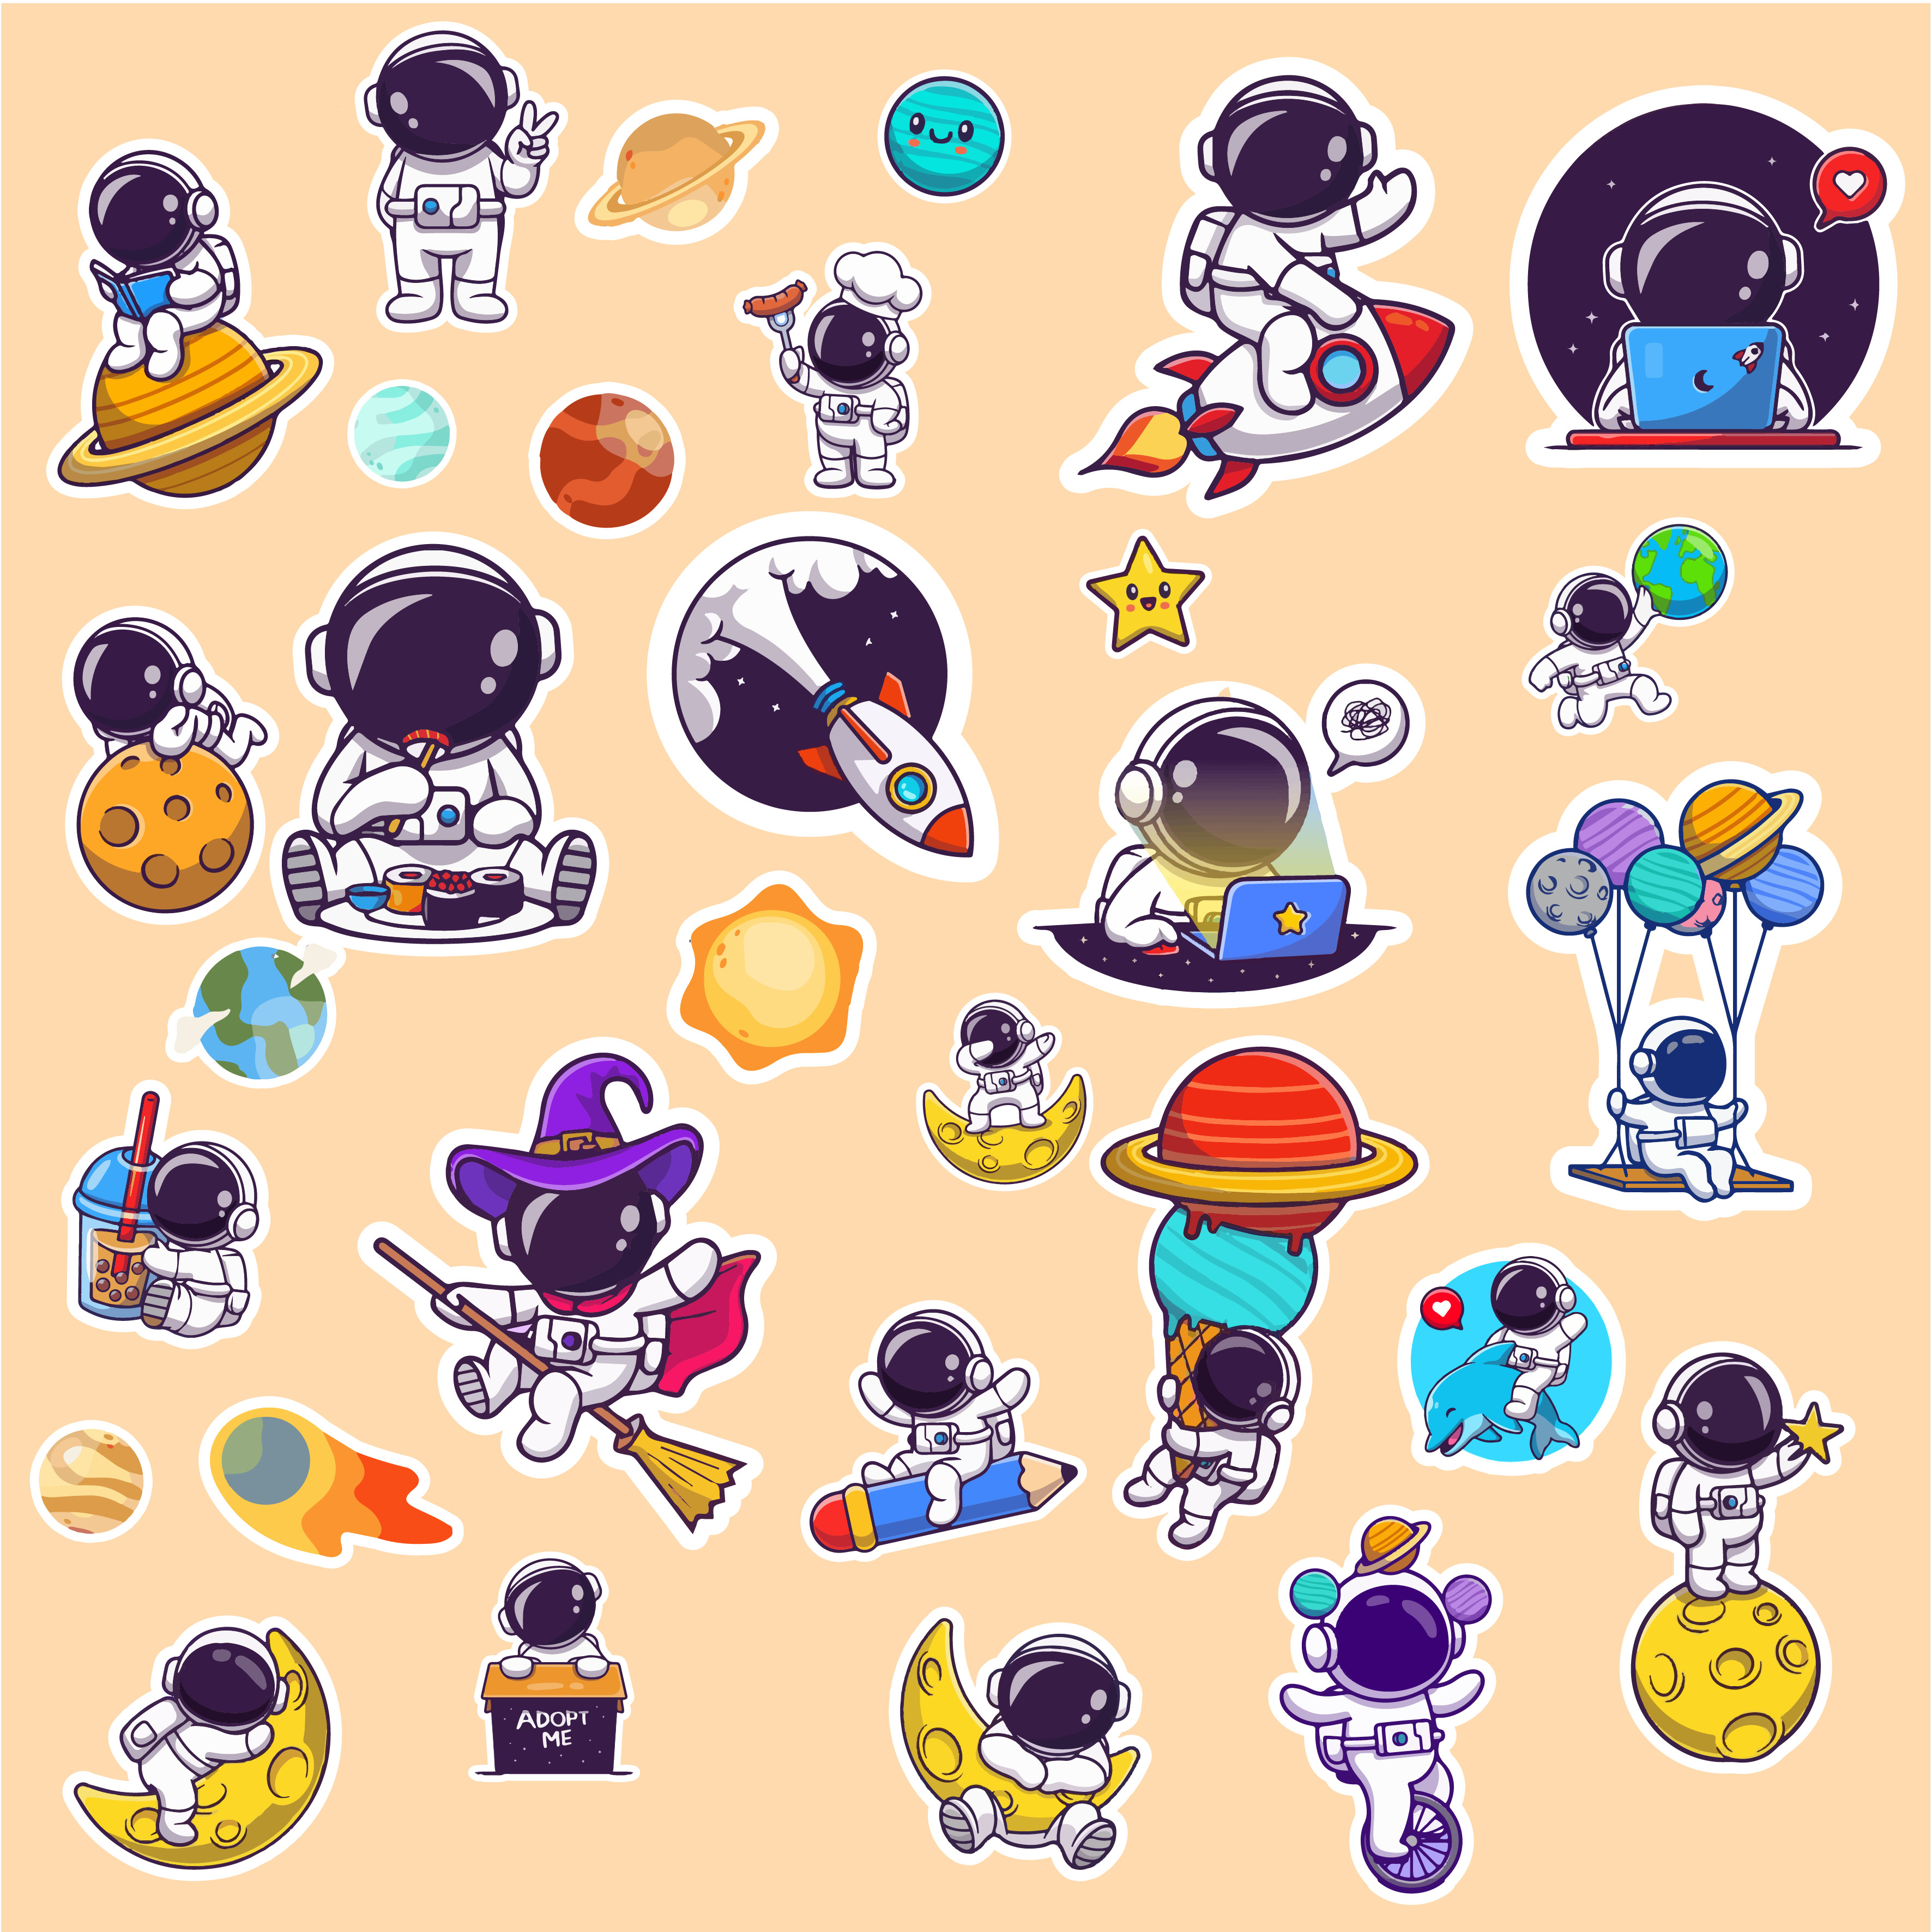 Sticker phi hành gia: Trang trí và làm mới cuộc trò chuyện của bạn với các sticker phi hành gia vui nhộn. Thêm chút bốc đồng và sáng tạo với những sticker vui của các phi hành gia, tàu vũ trụ và các hành tinh.